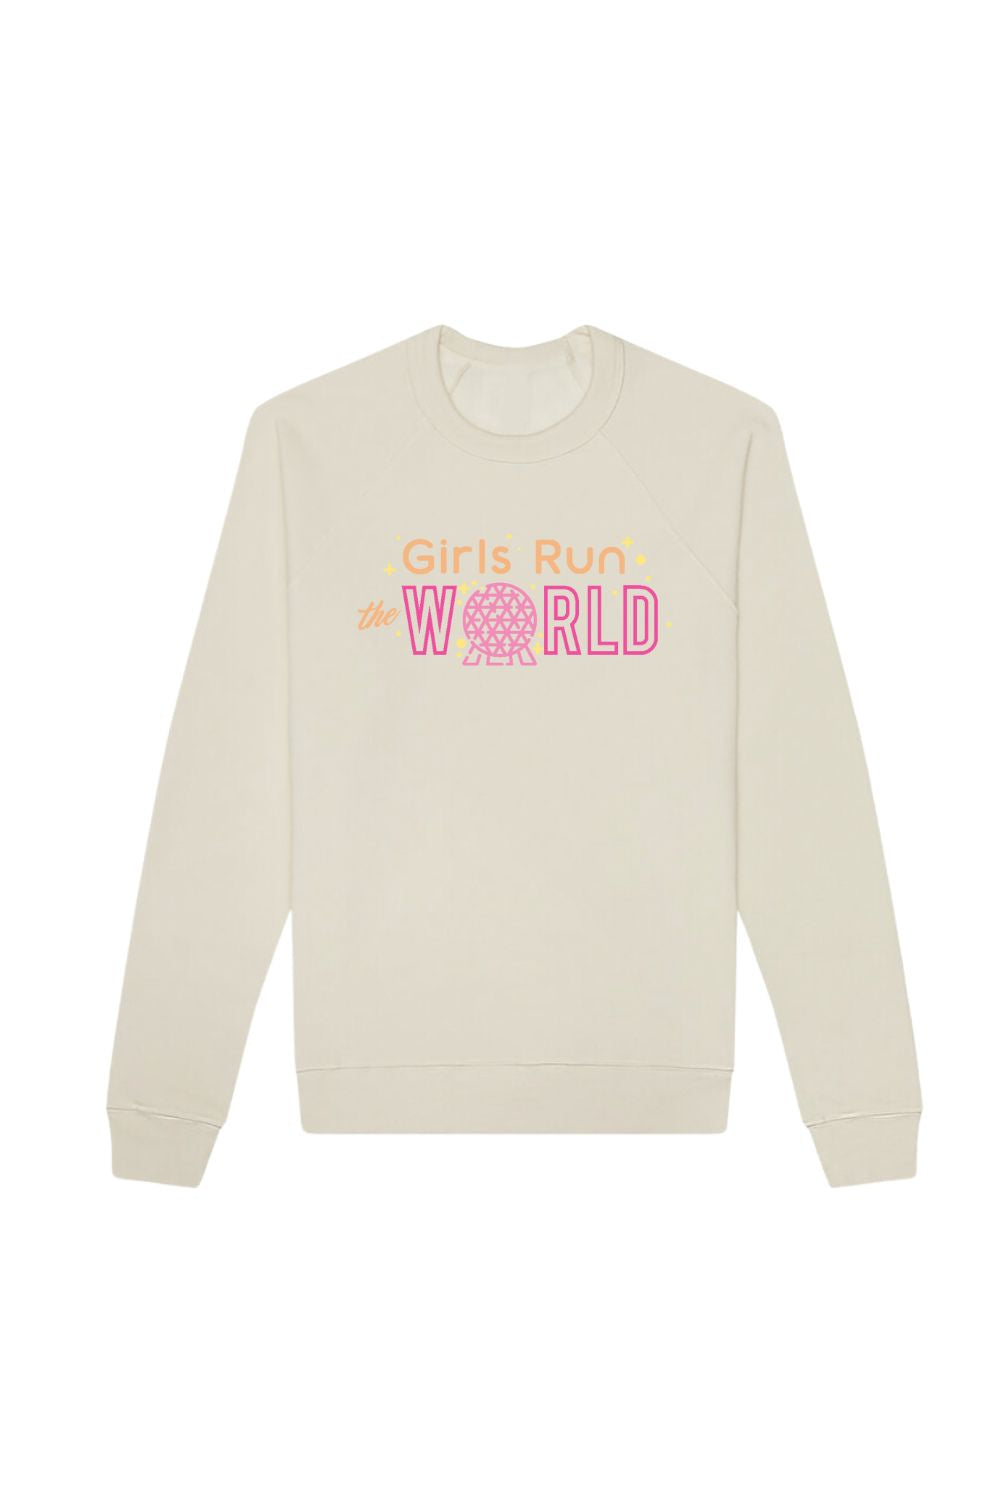 Girls Run The World Disney Epcot Sweatshirt